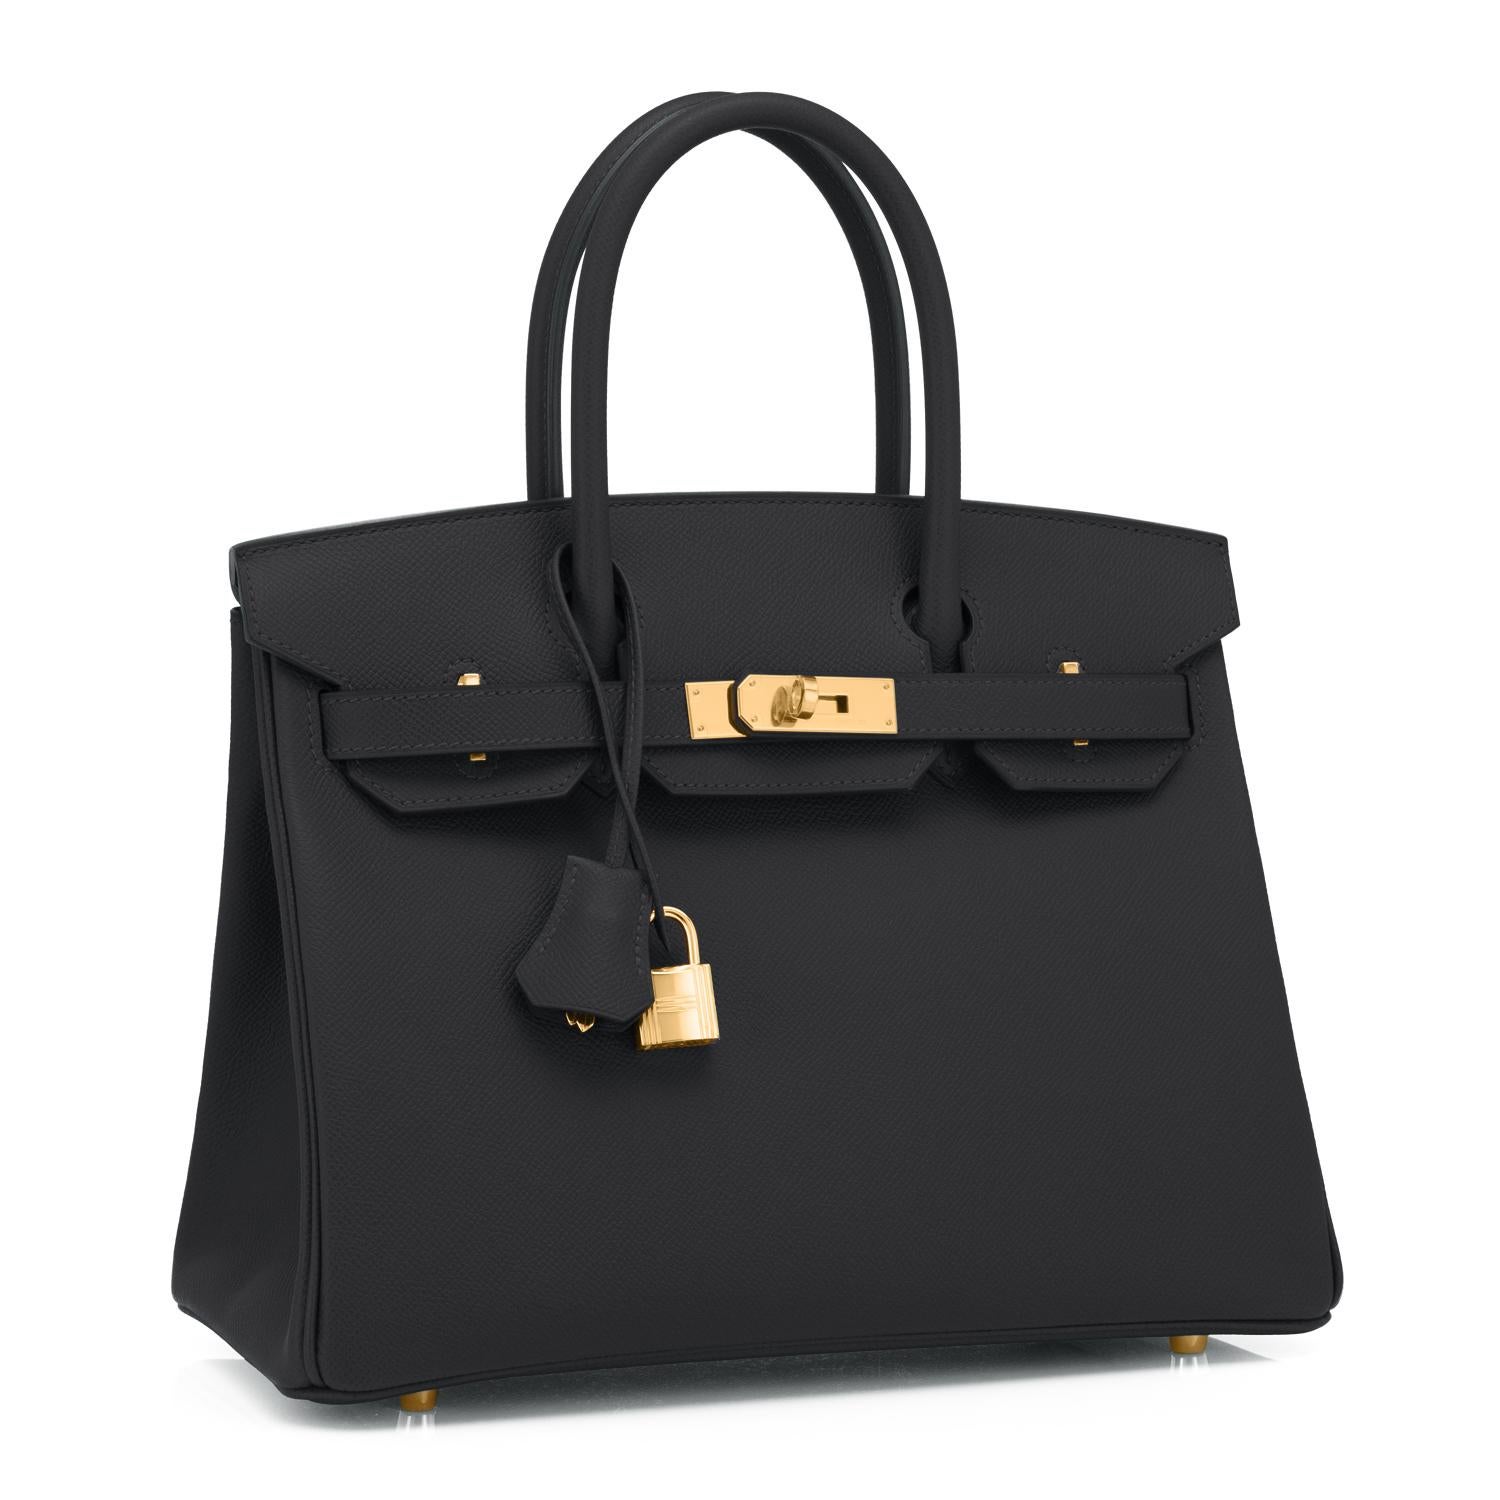 Hermes Birkin 30cm Noir Epsom Gold Hardware Bag U Stamp, 2022
Acheté dans une boutique Hermès, le sac porte un nouveau tampon intérieur 2022 U.
Neuf dans la boîte. Conserver au frais.  Condit (avec plastique sur le matériel)
Un cadeau parfait !